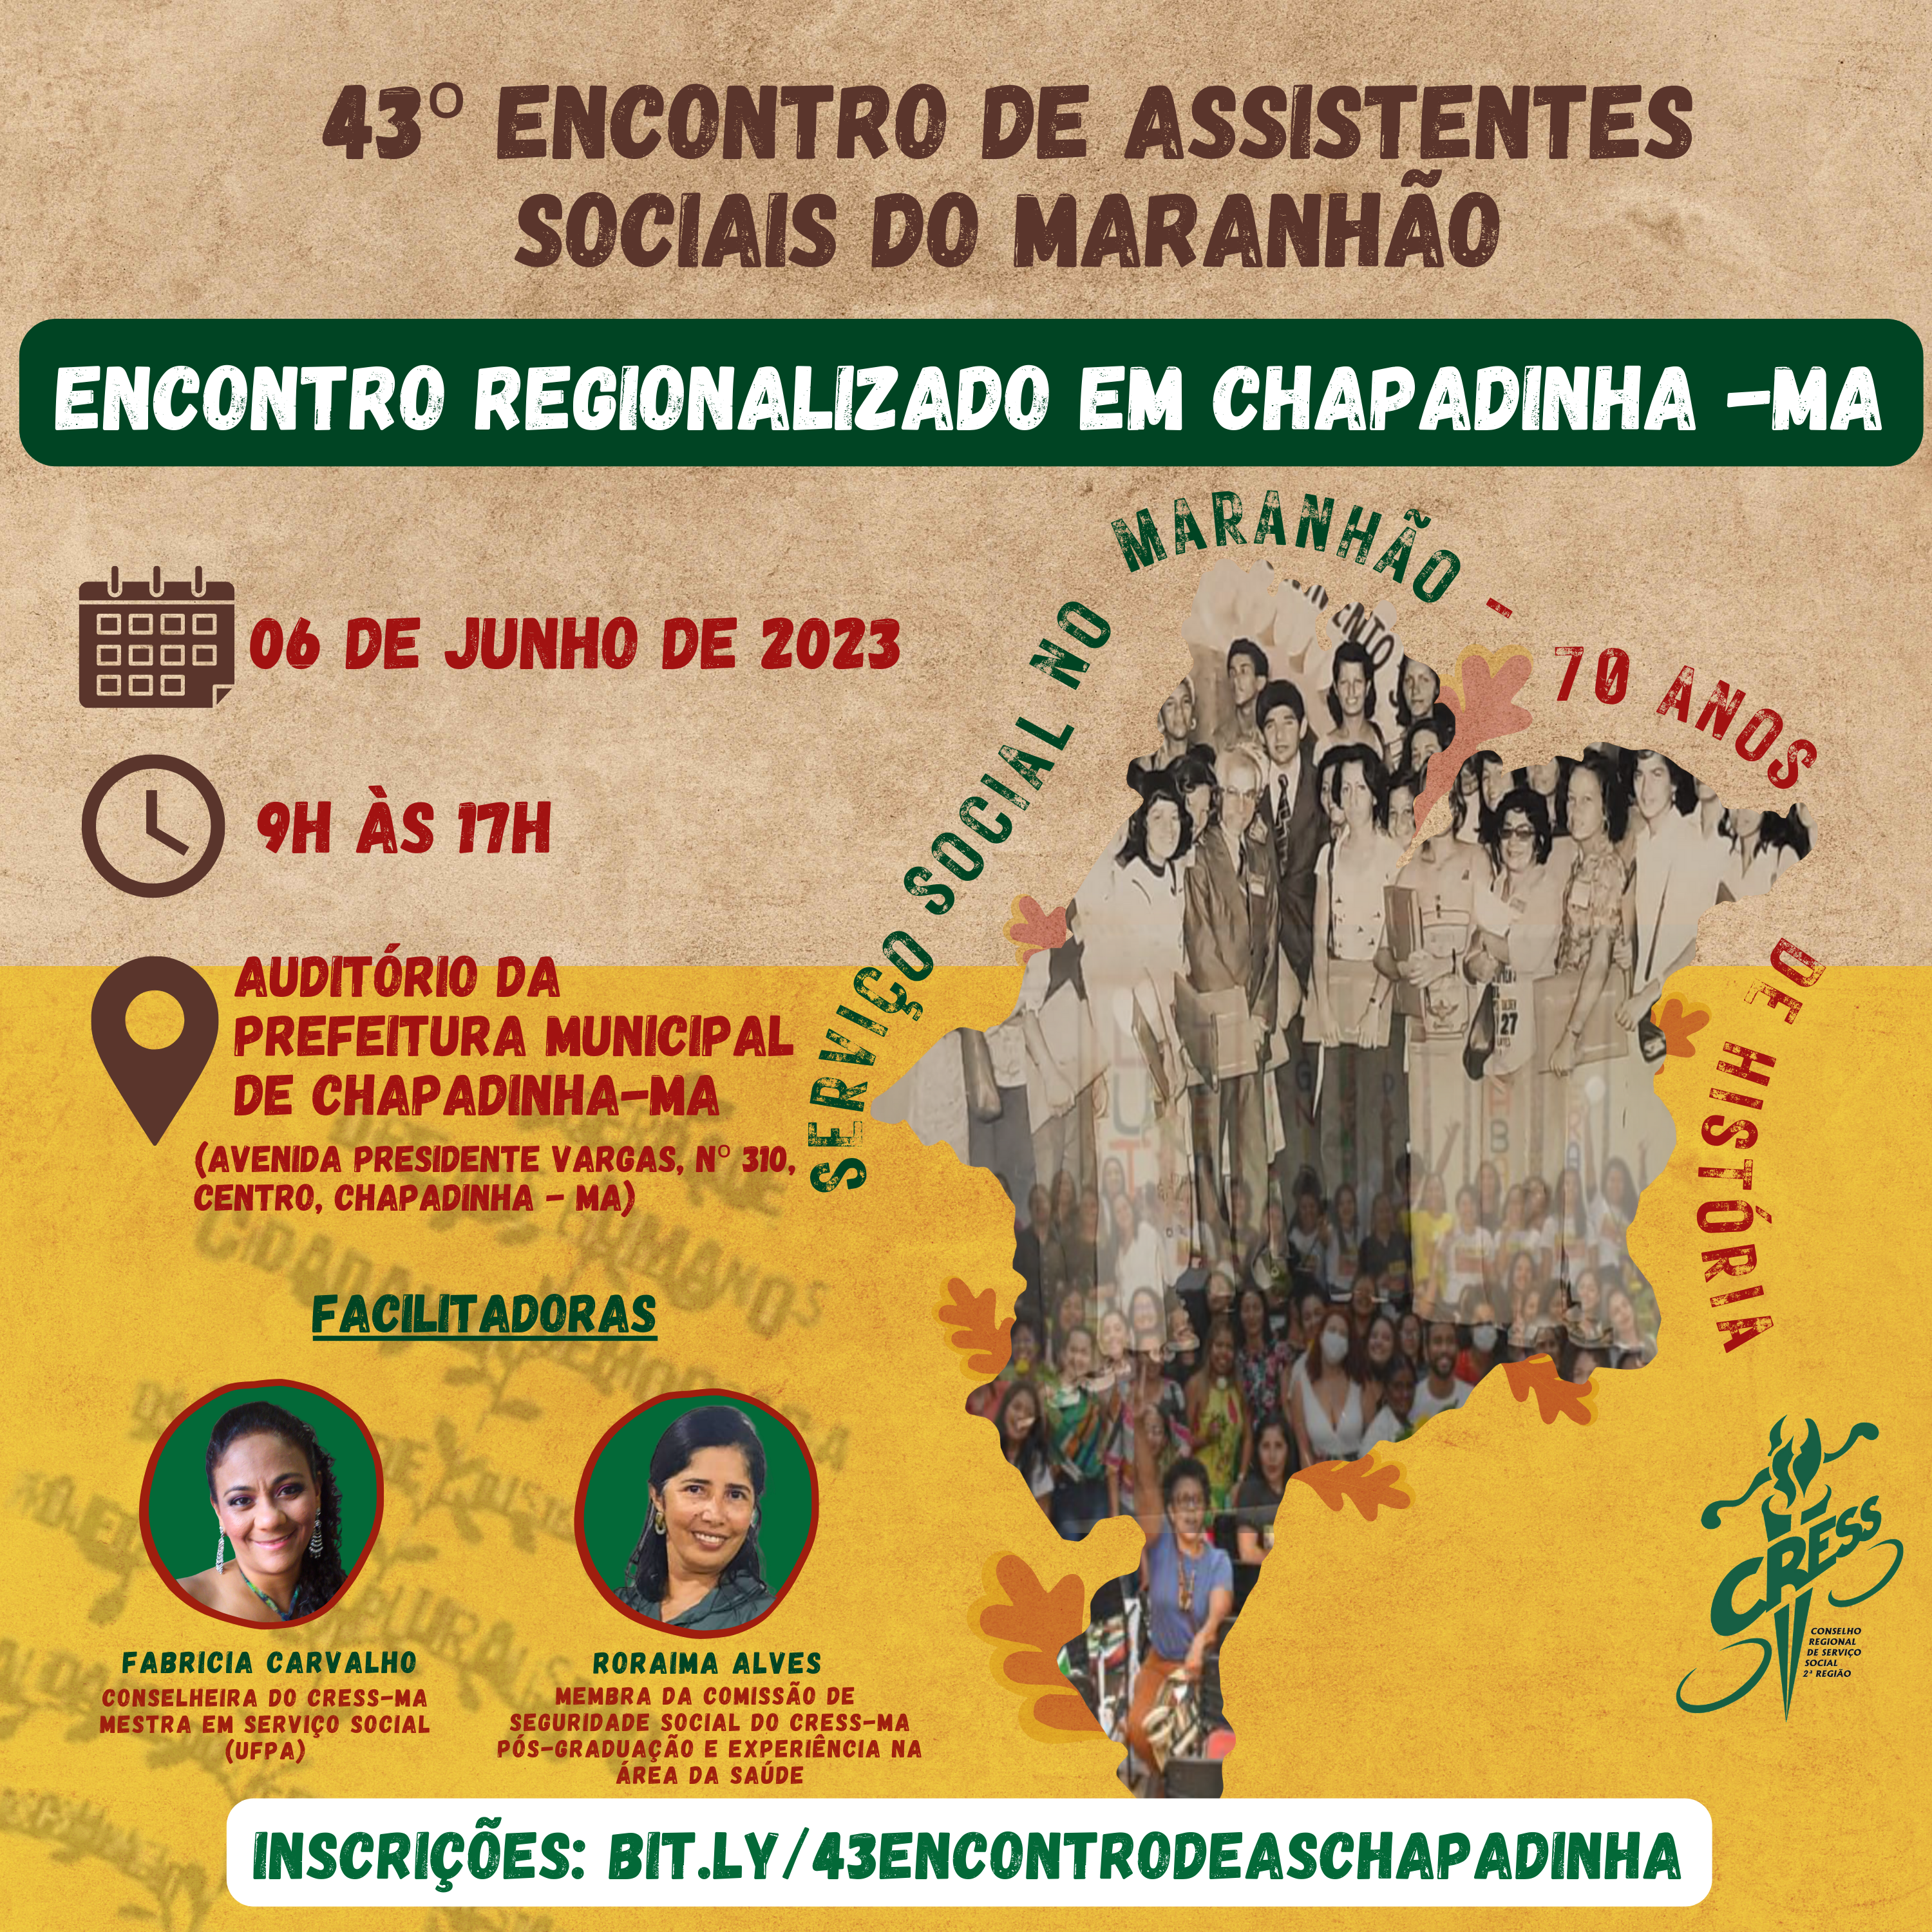 43 Encontro de As no Maranhão - Chapadinha